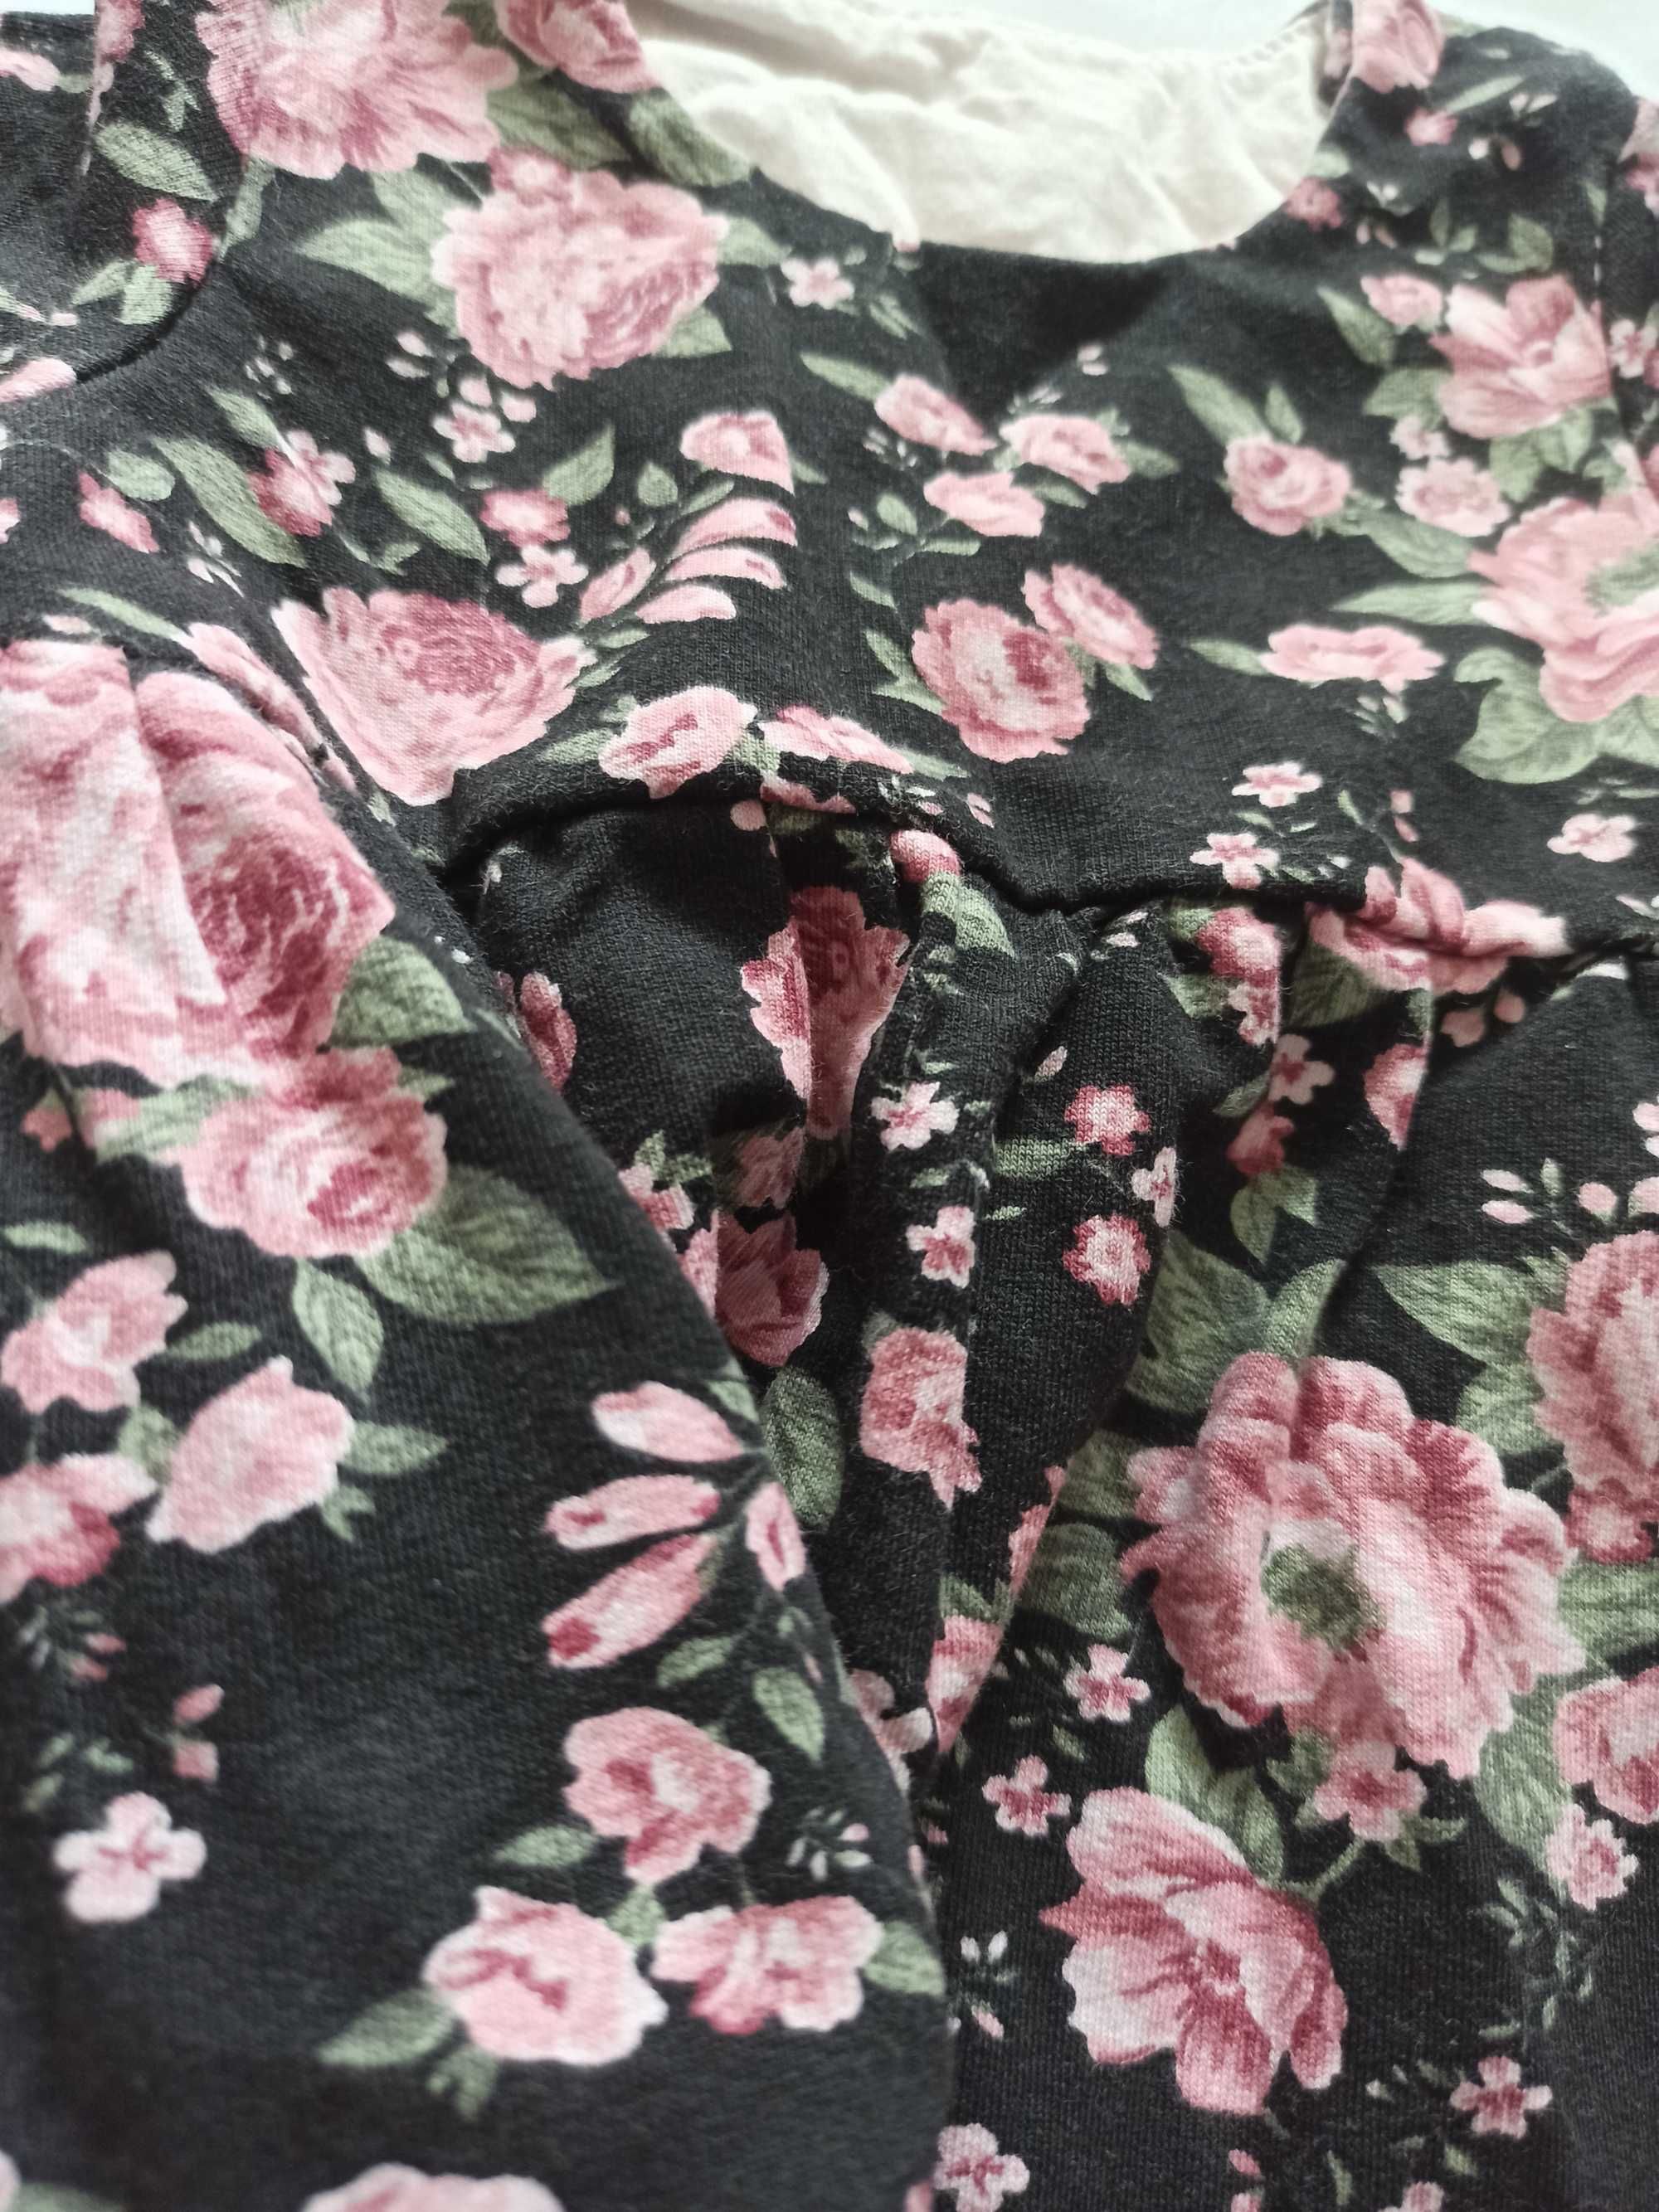 Sukienka mrofi rose czarna
ala newbie w kwiaty
62-68